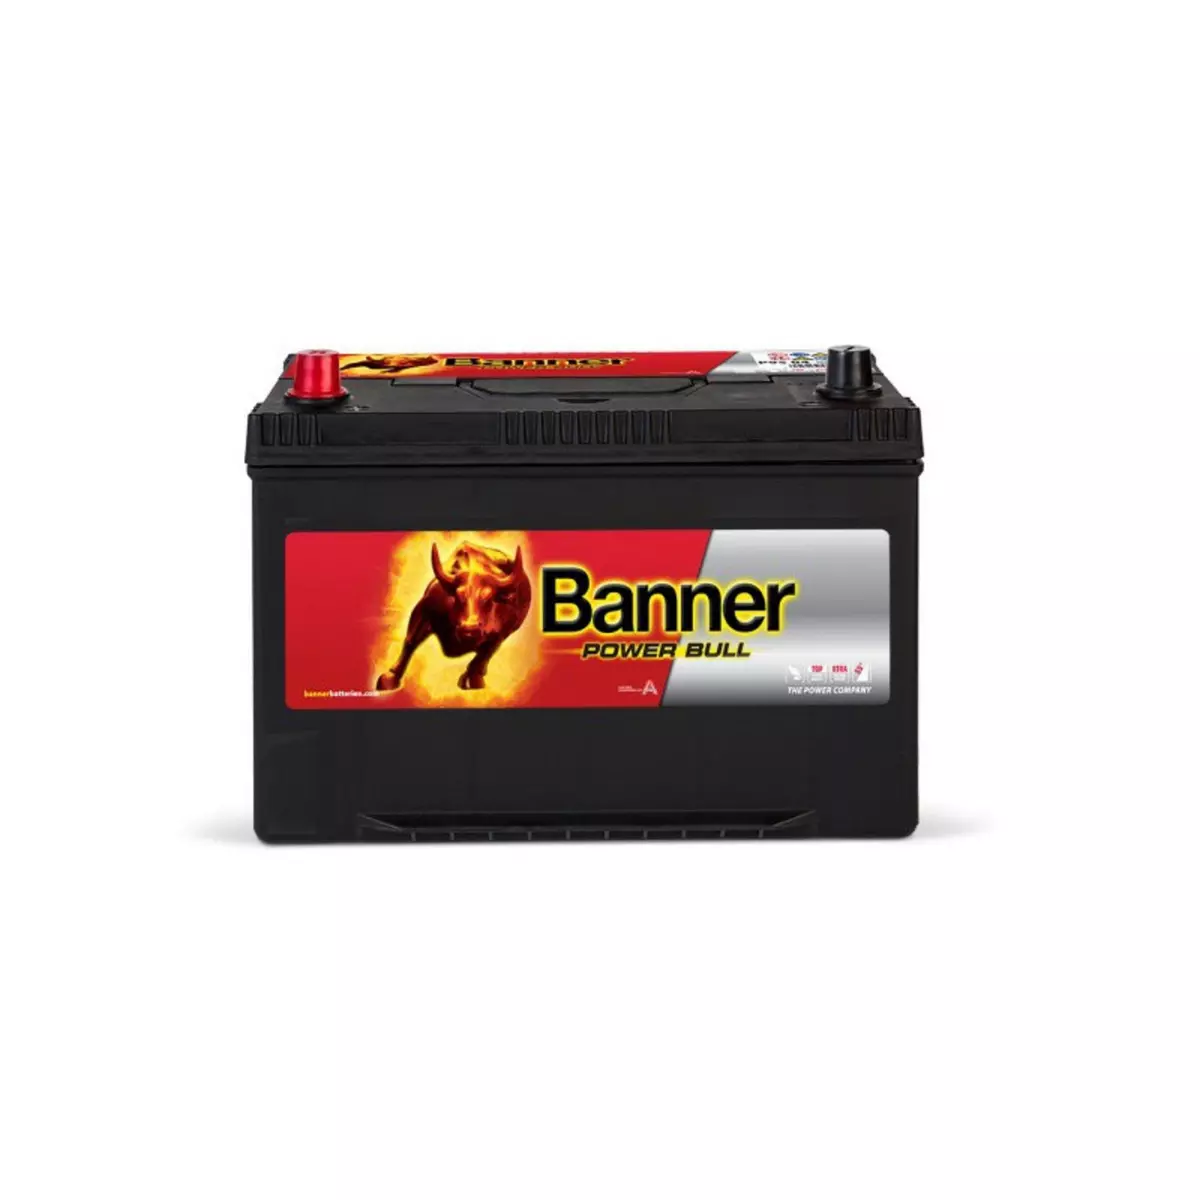 BANNER Banner Power Bull P9505 12v 95AH 740A